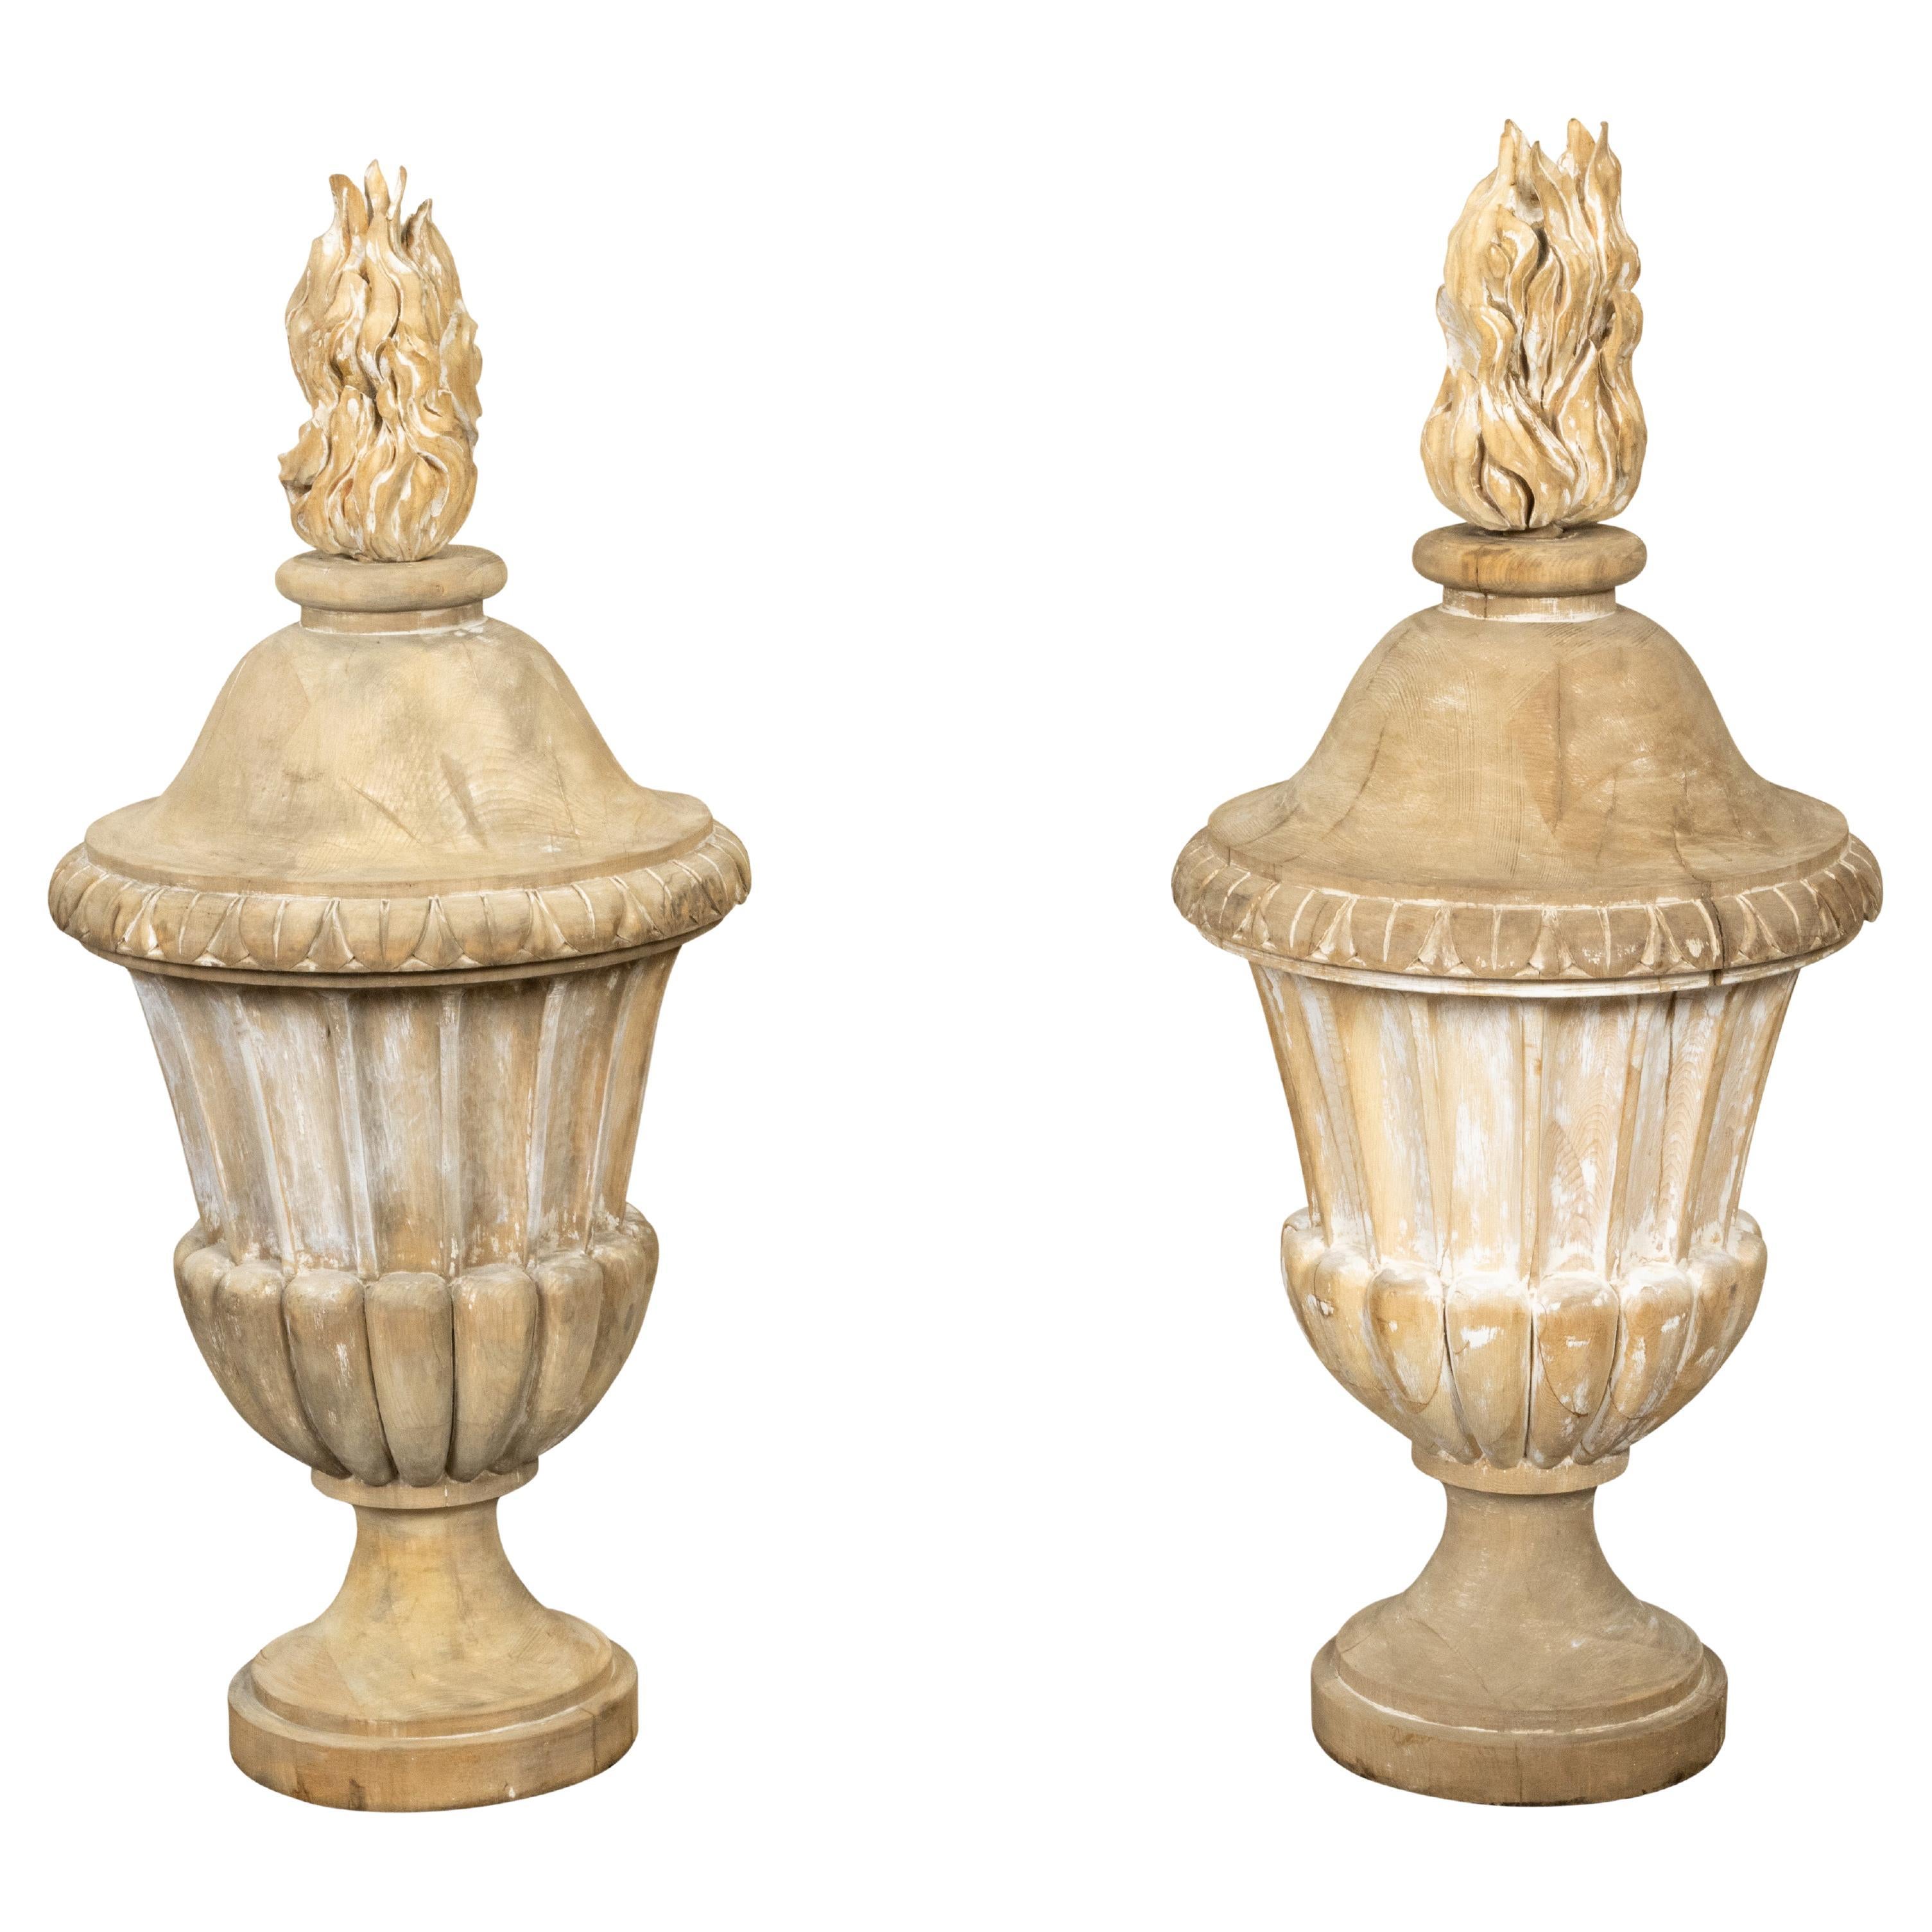 Pots à feu en bois sculpté de style classique français du 19ème siècle avec des traces de peinture en vente